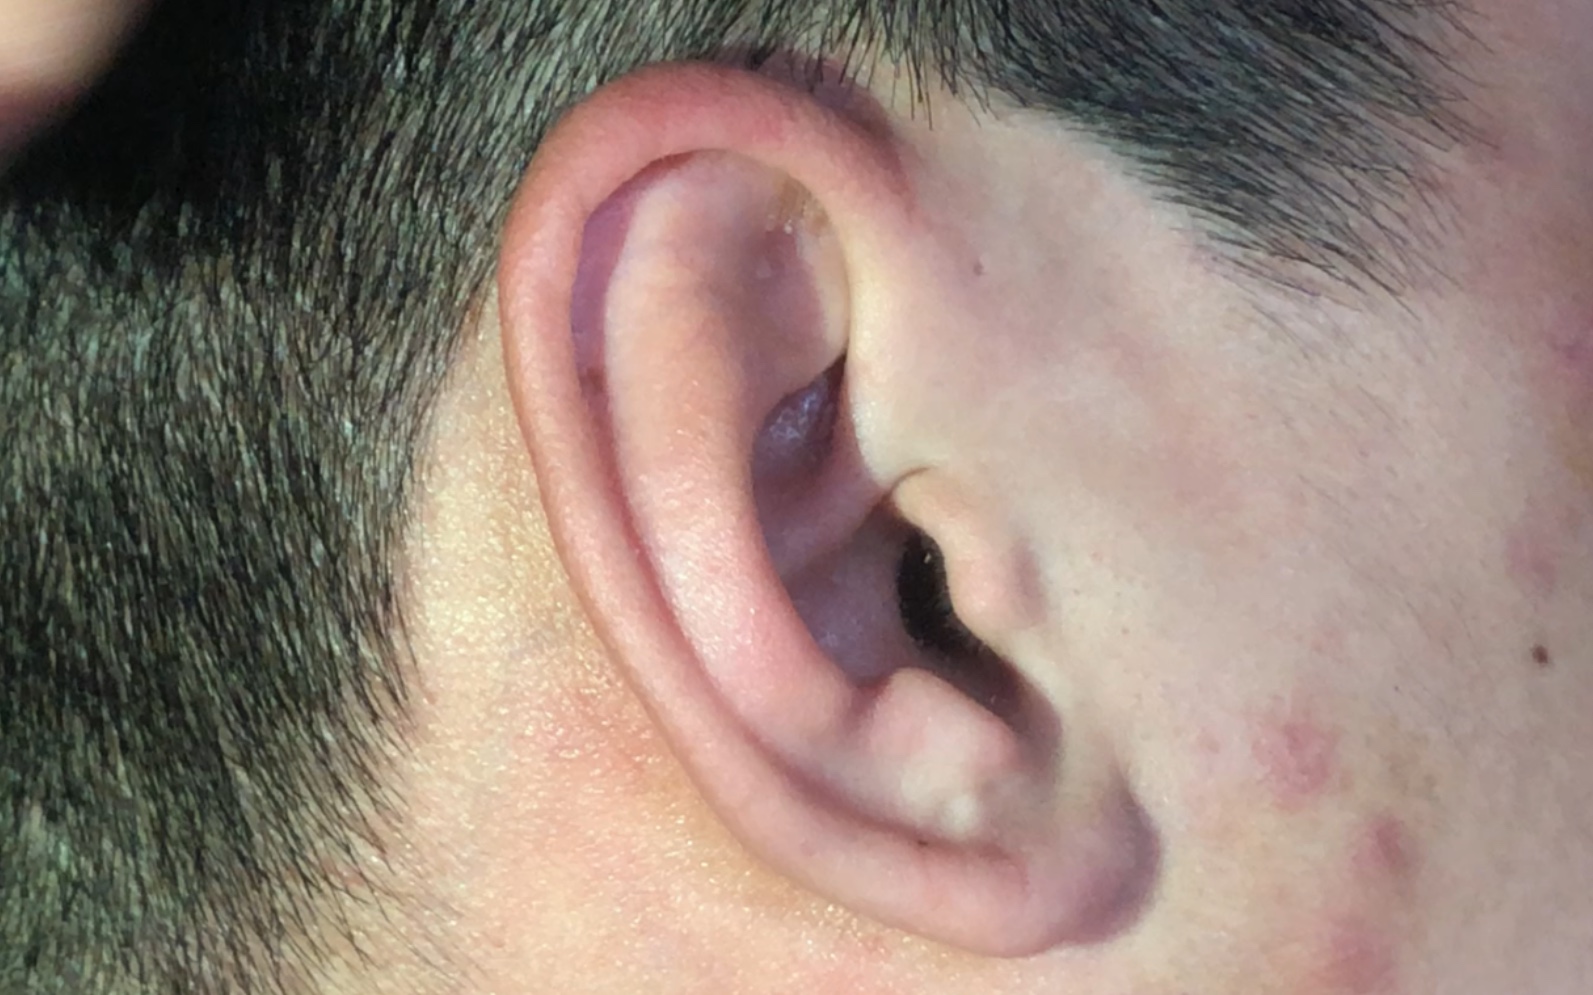 耳朵边缘藓症状图片图片